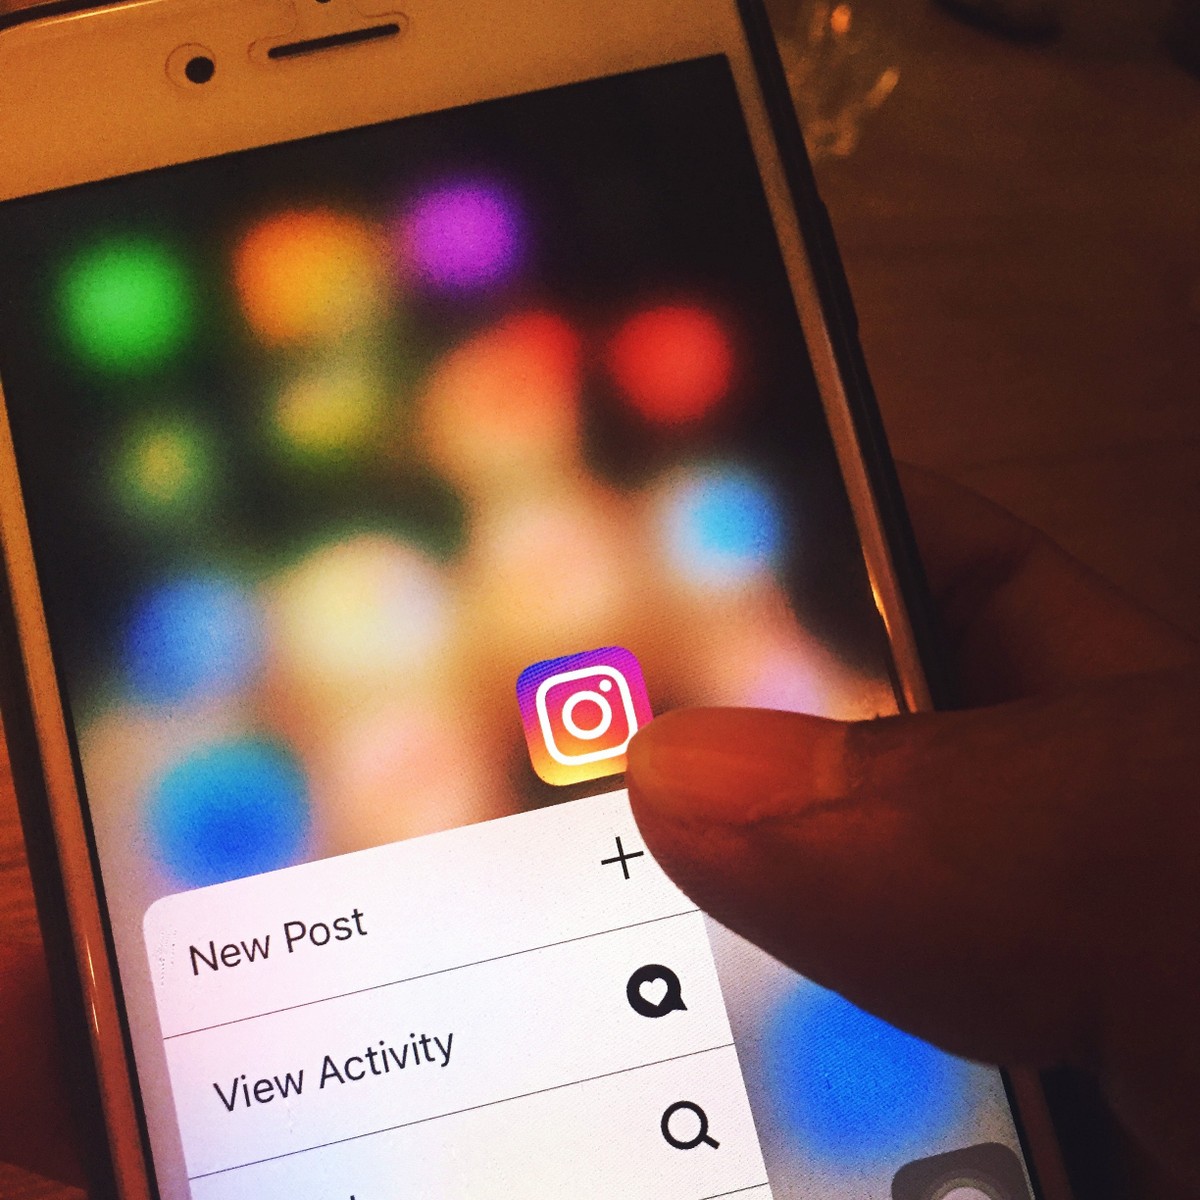 4 dicas para melhorar a qualidade das fotos no Instagram